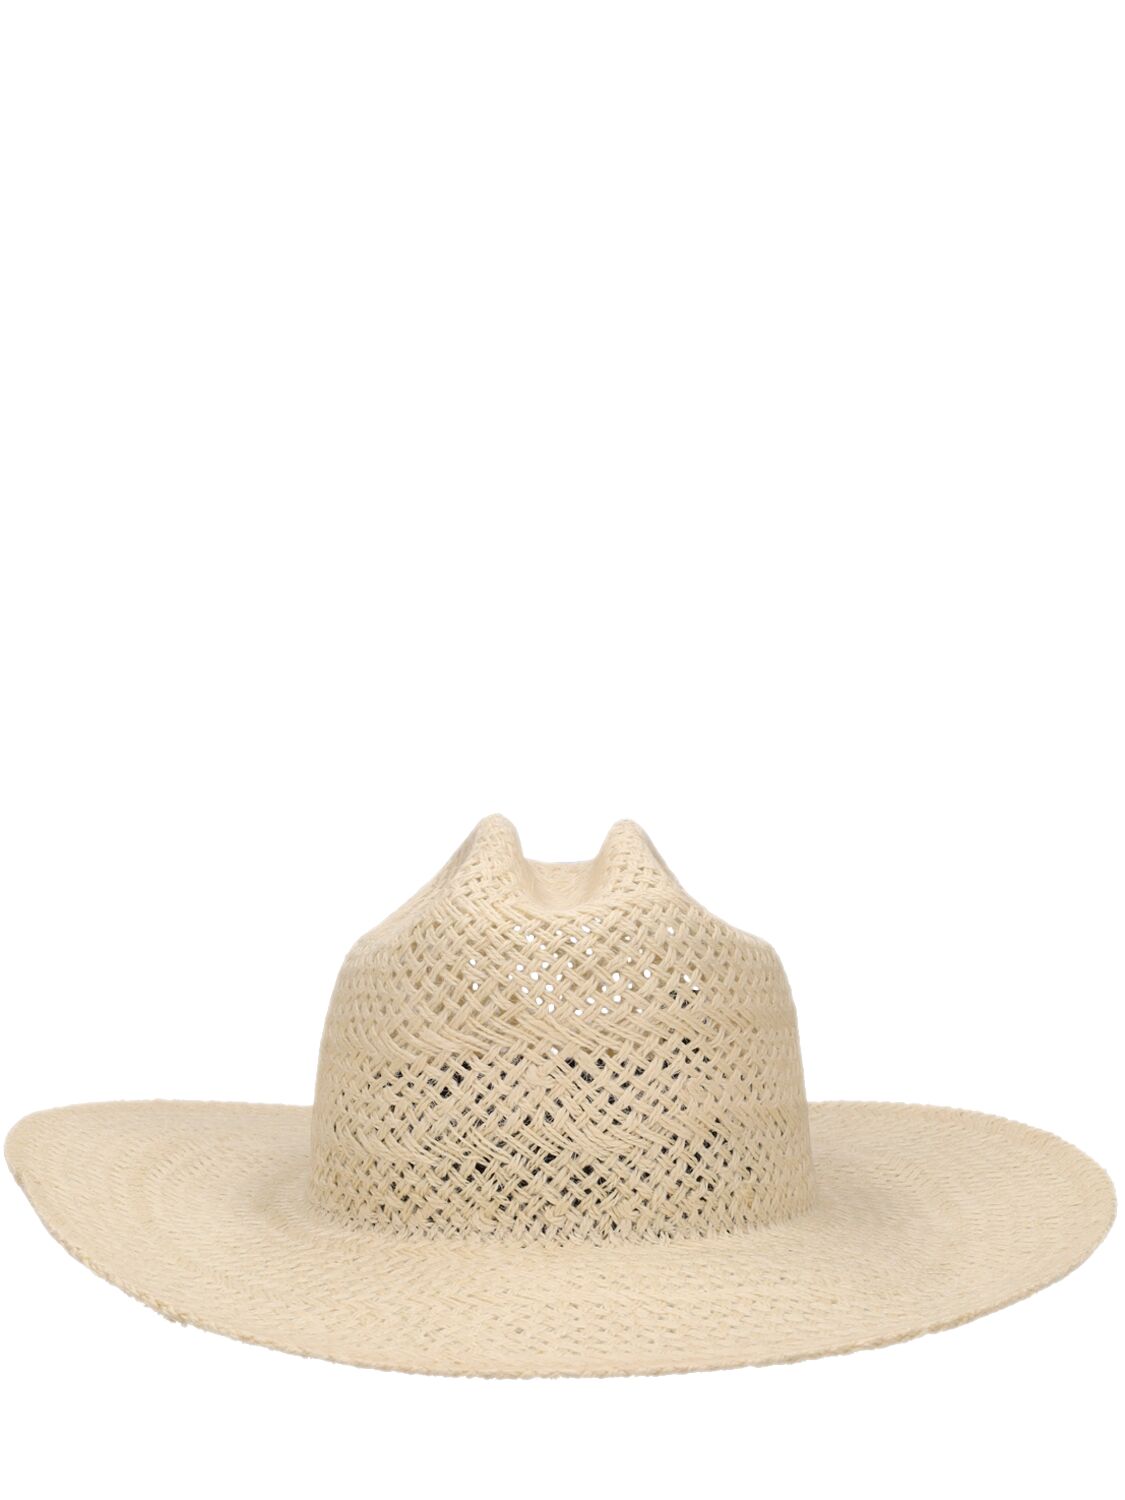 Janessa Leone Aiden Straw Western Hat In Natural